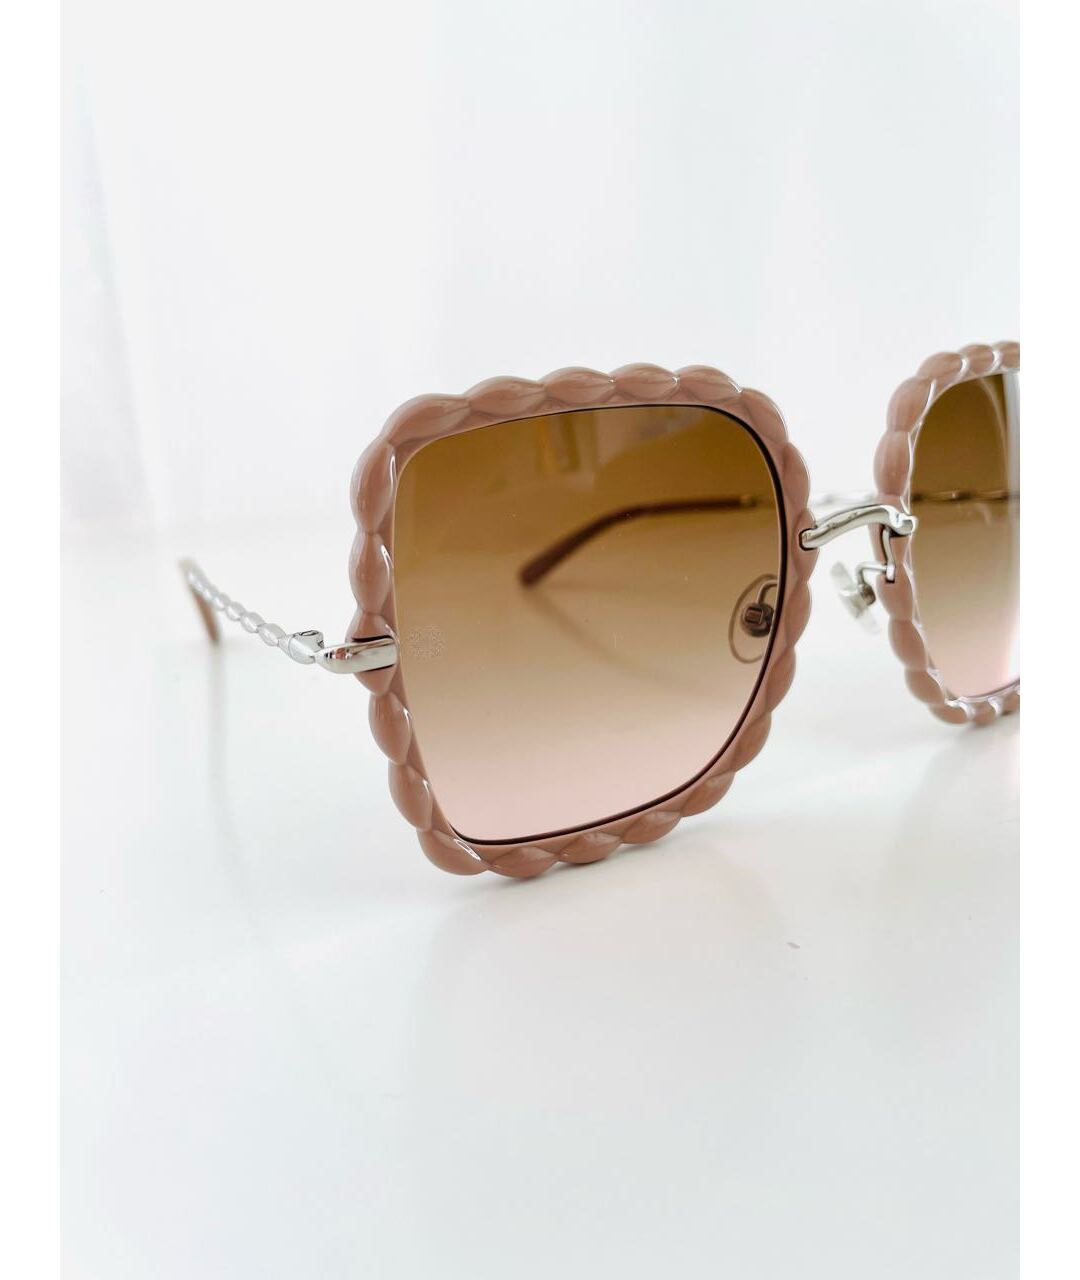 ELIE SAAB Бежевые пластиковые солнцезащитные очки, фото 3